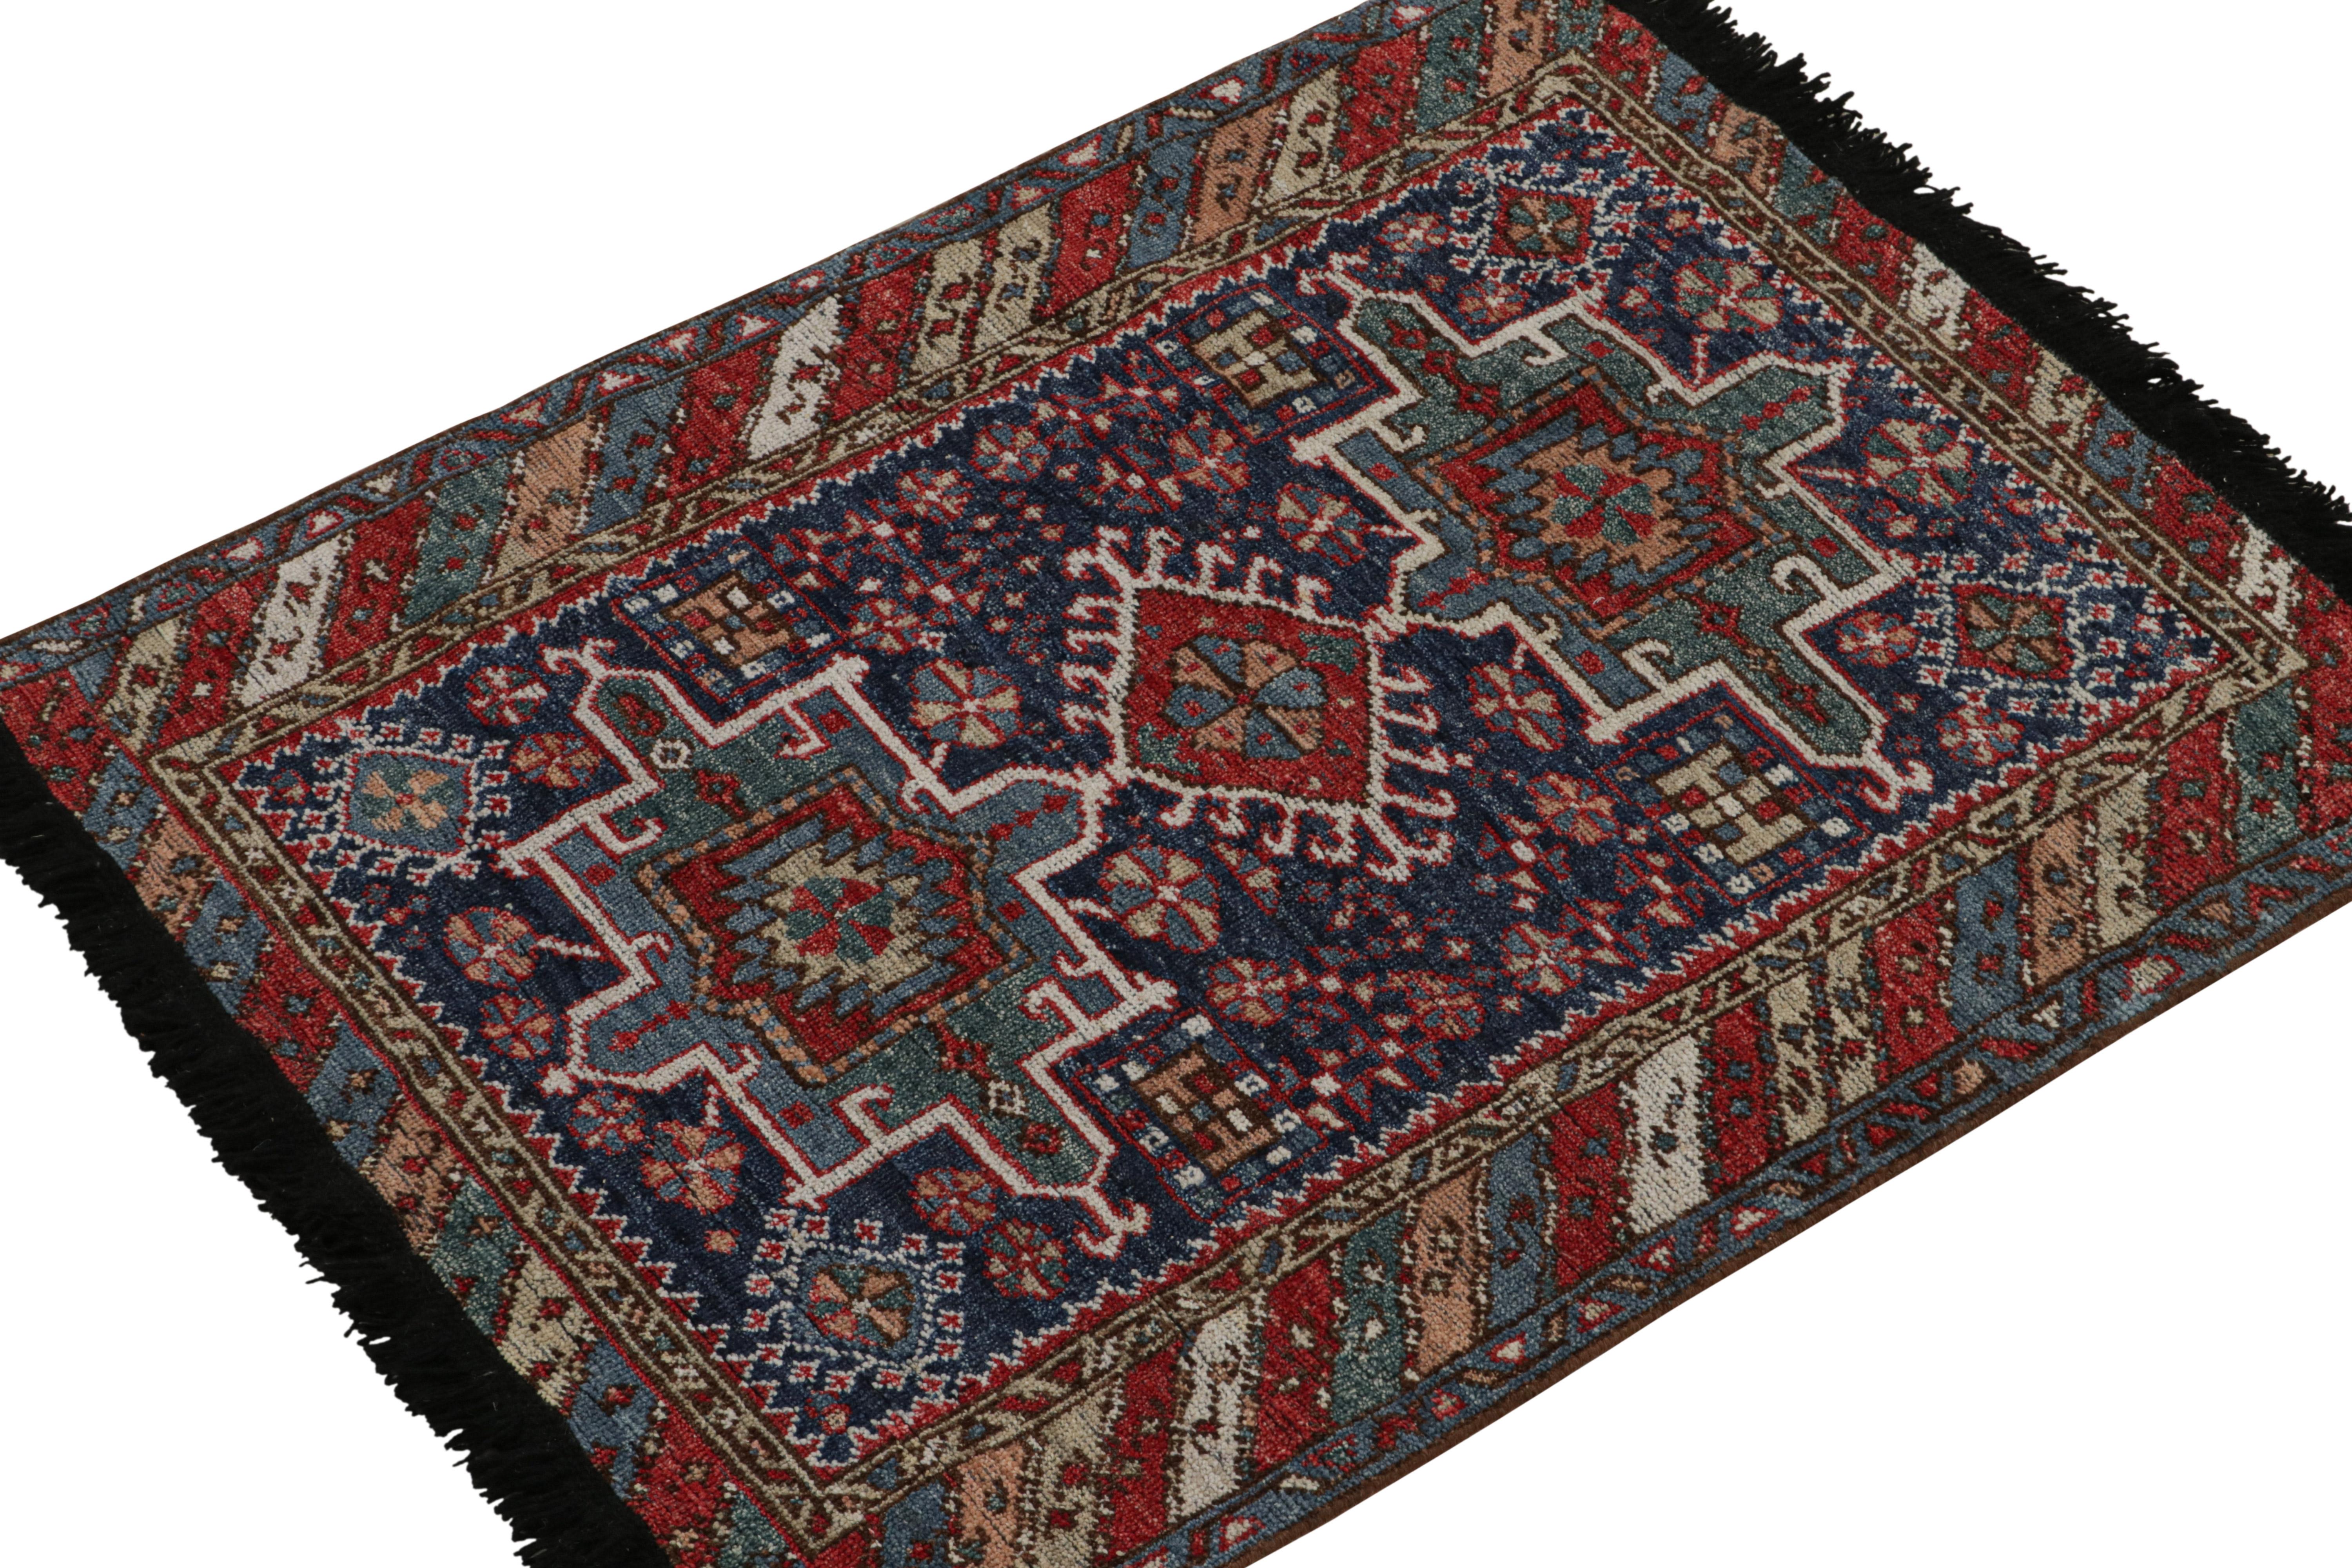 Dieser Teppich 3x4 ist ein großartiger Neuzugang in der klassischen Burano-Kollektion von Rug & Kilim. Handgeknüpft aus Wolle.

Über das Design

Dieser Teppich ist von persischen Stammesteppichen in satten Farben wie Rot, Blau, Weiß und Braun